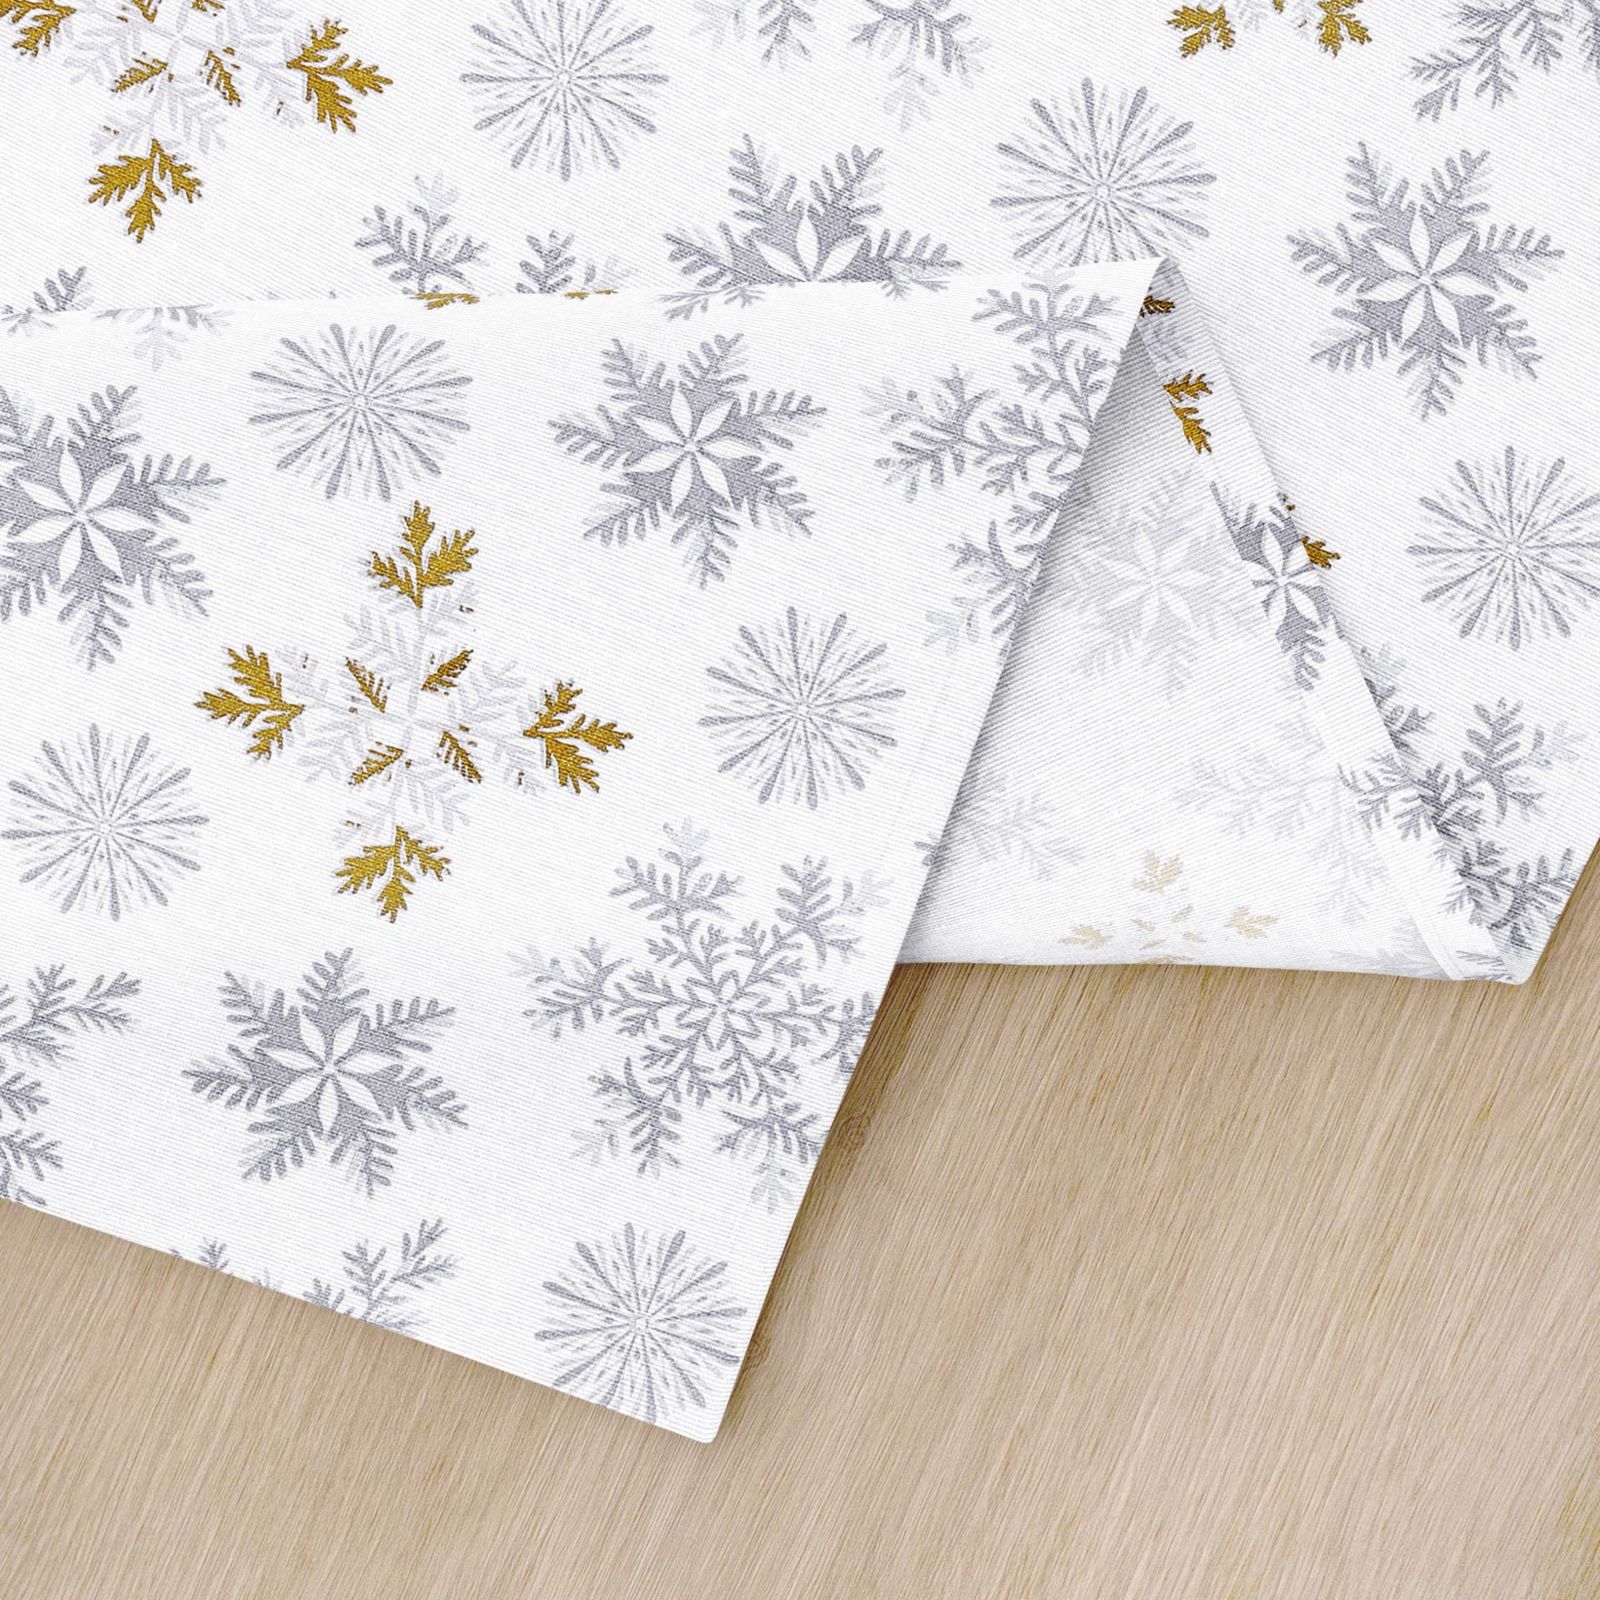 Podkładka na stół bawełniana świąteczna - szare płatki śniegu ze złotym brokatem na białym - 2szt.